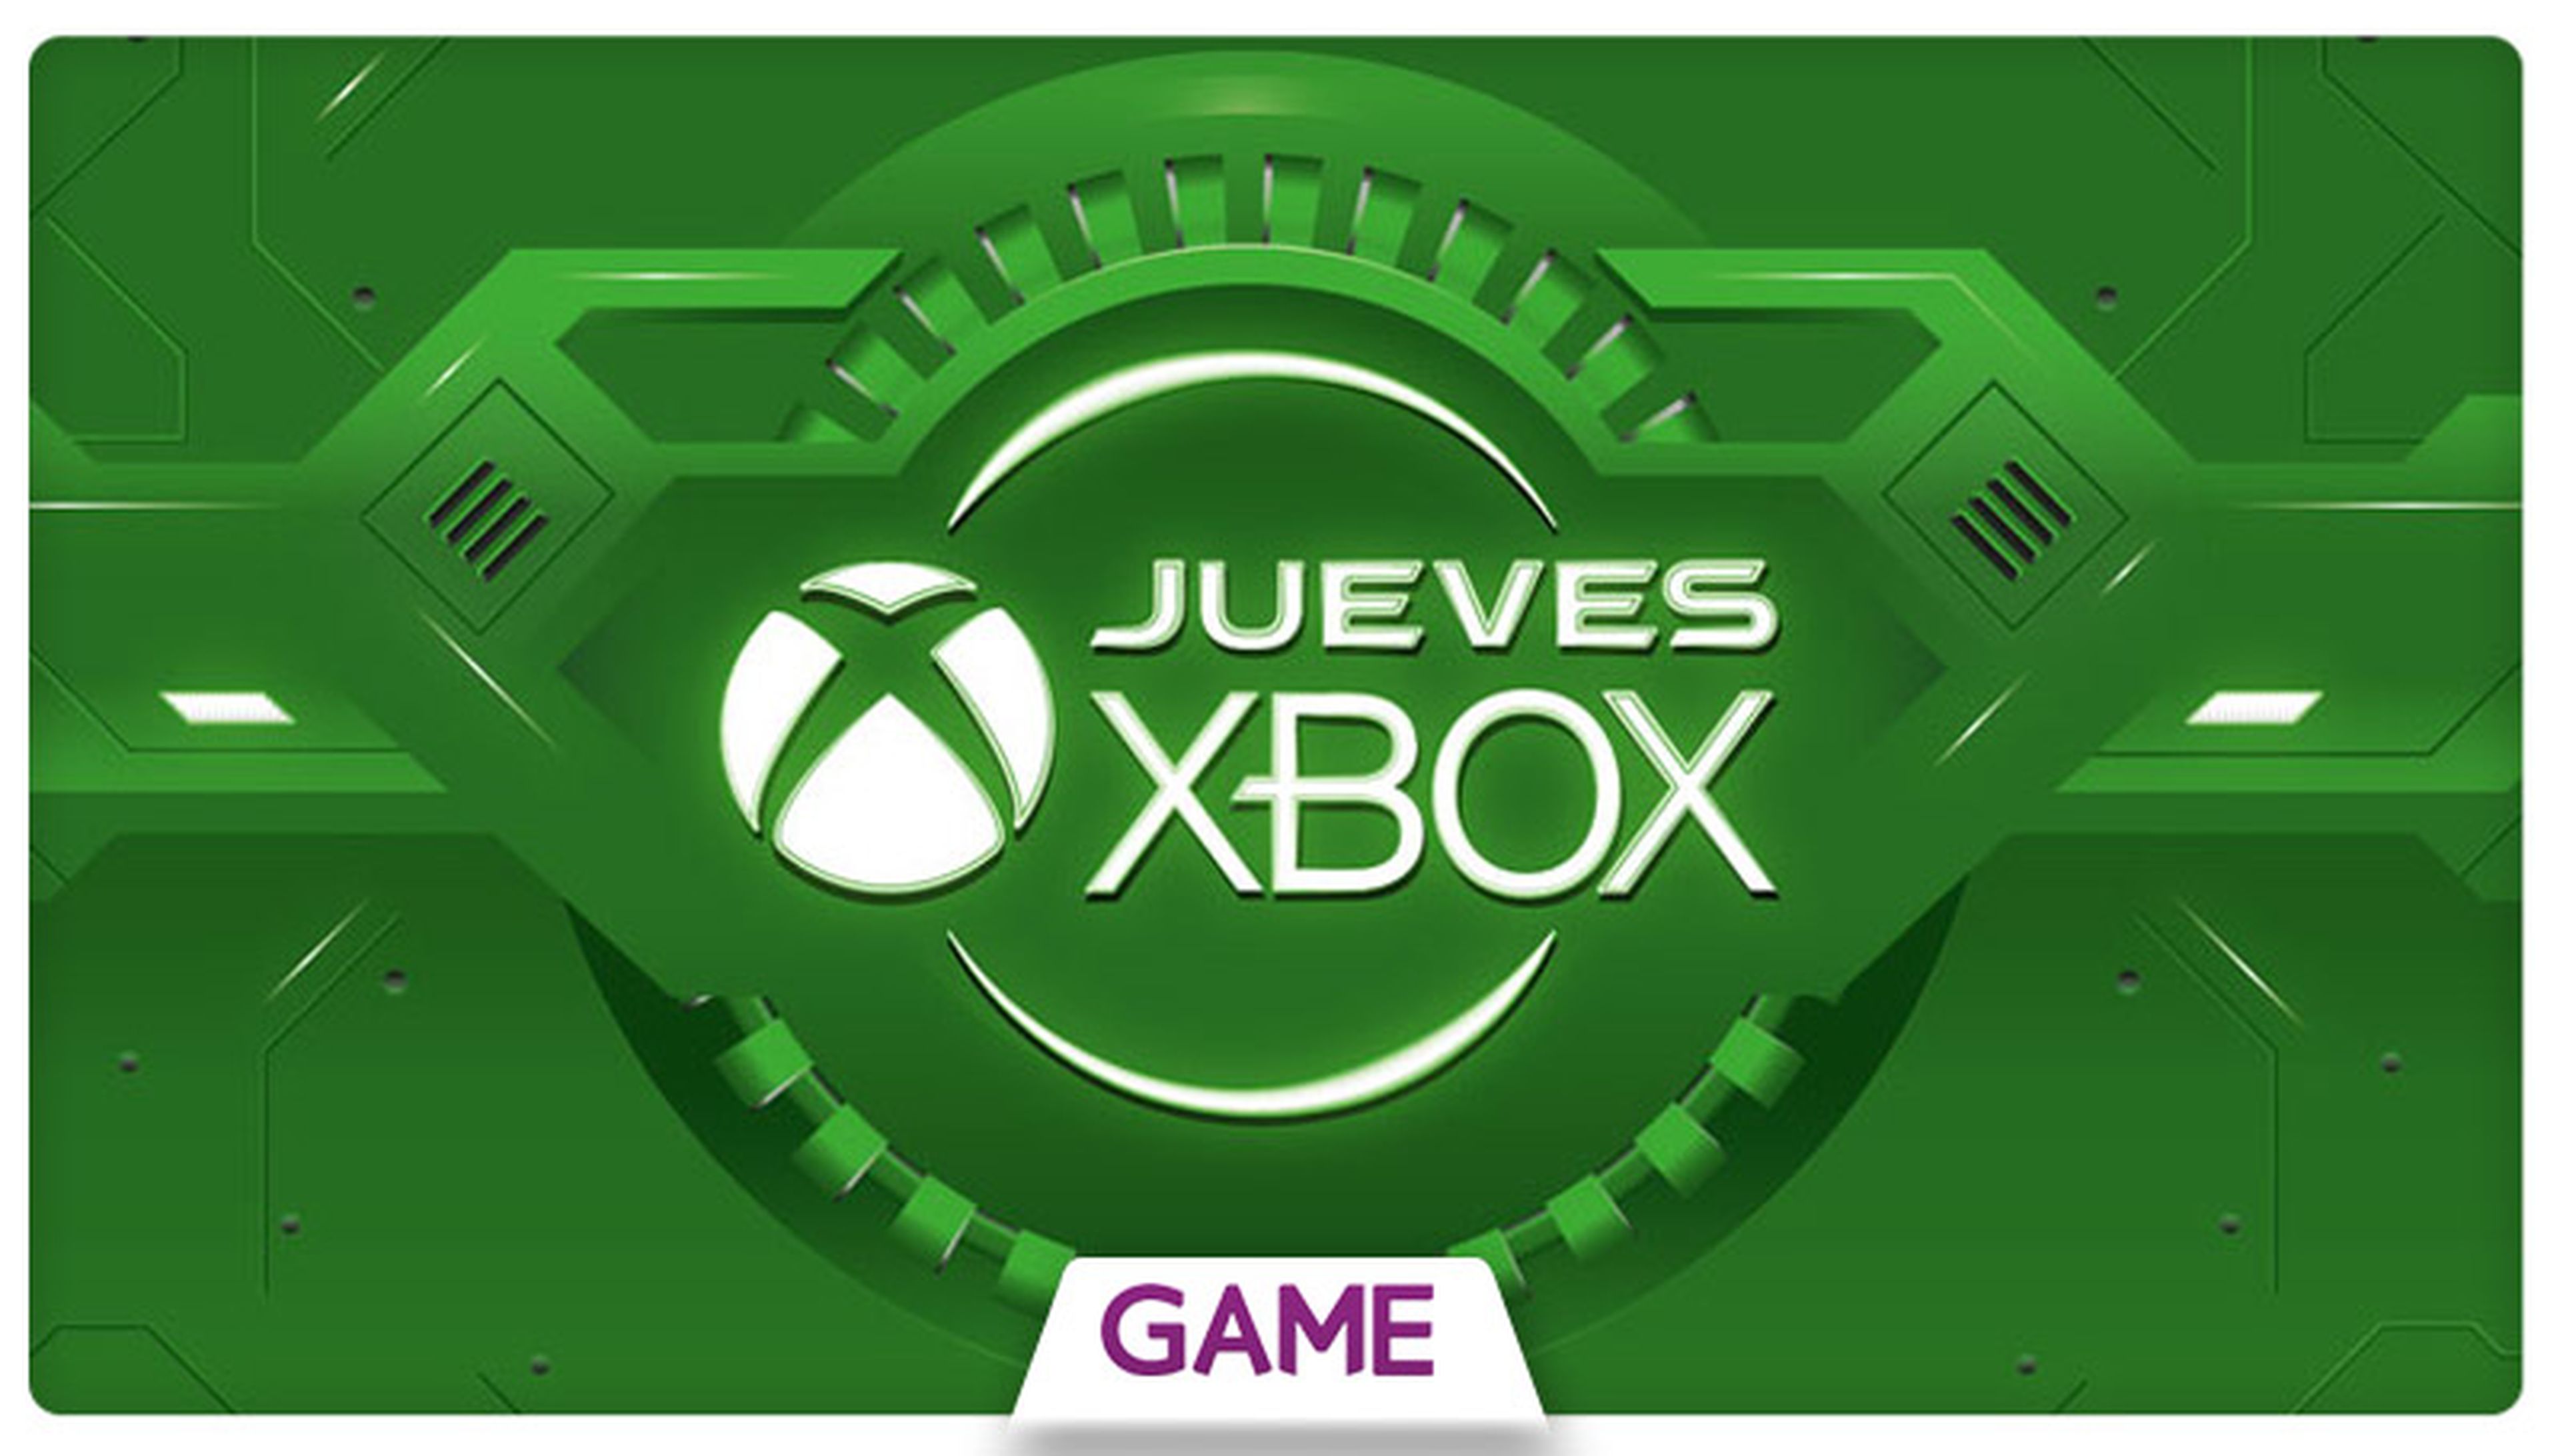 Jueves Xbox en GAME: Ofertas del 12/11/2015